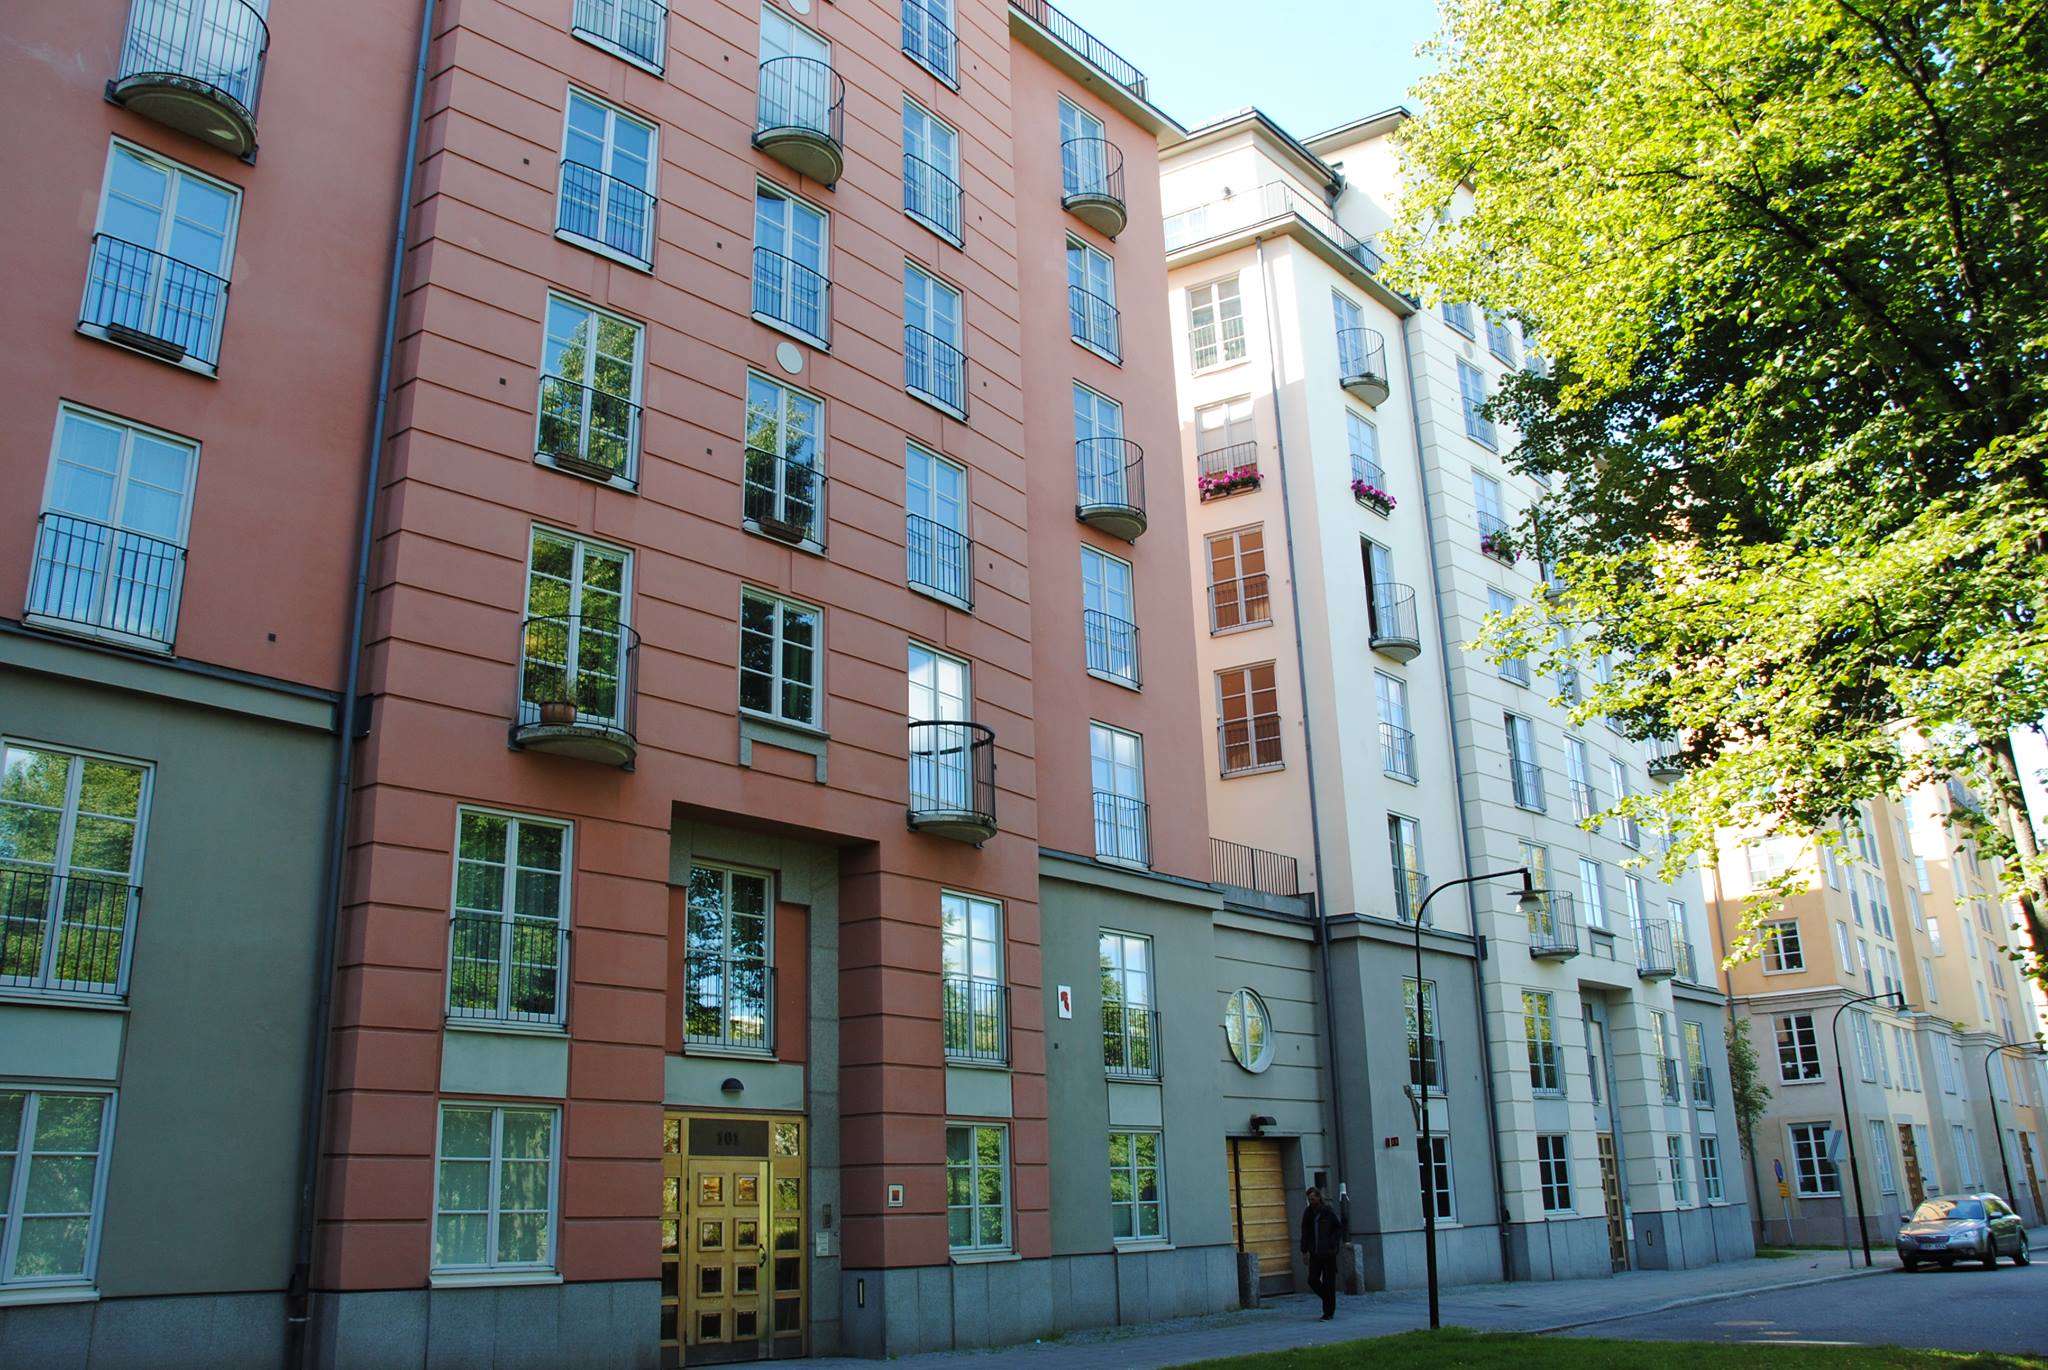 Byggnaderna i S:t Eriksområdet påminner om den svenska 1920-talsklassicismen.